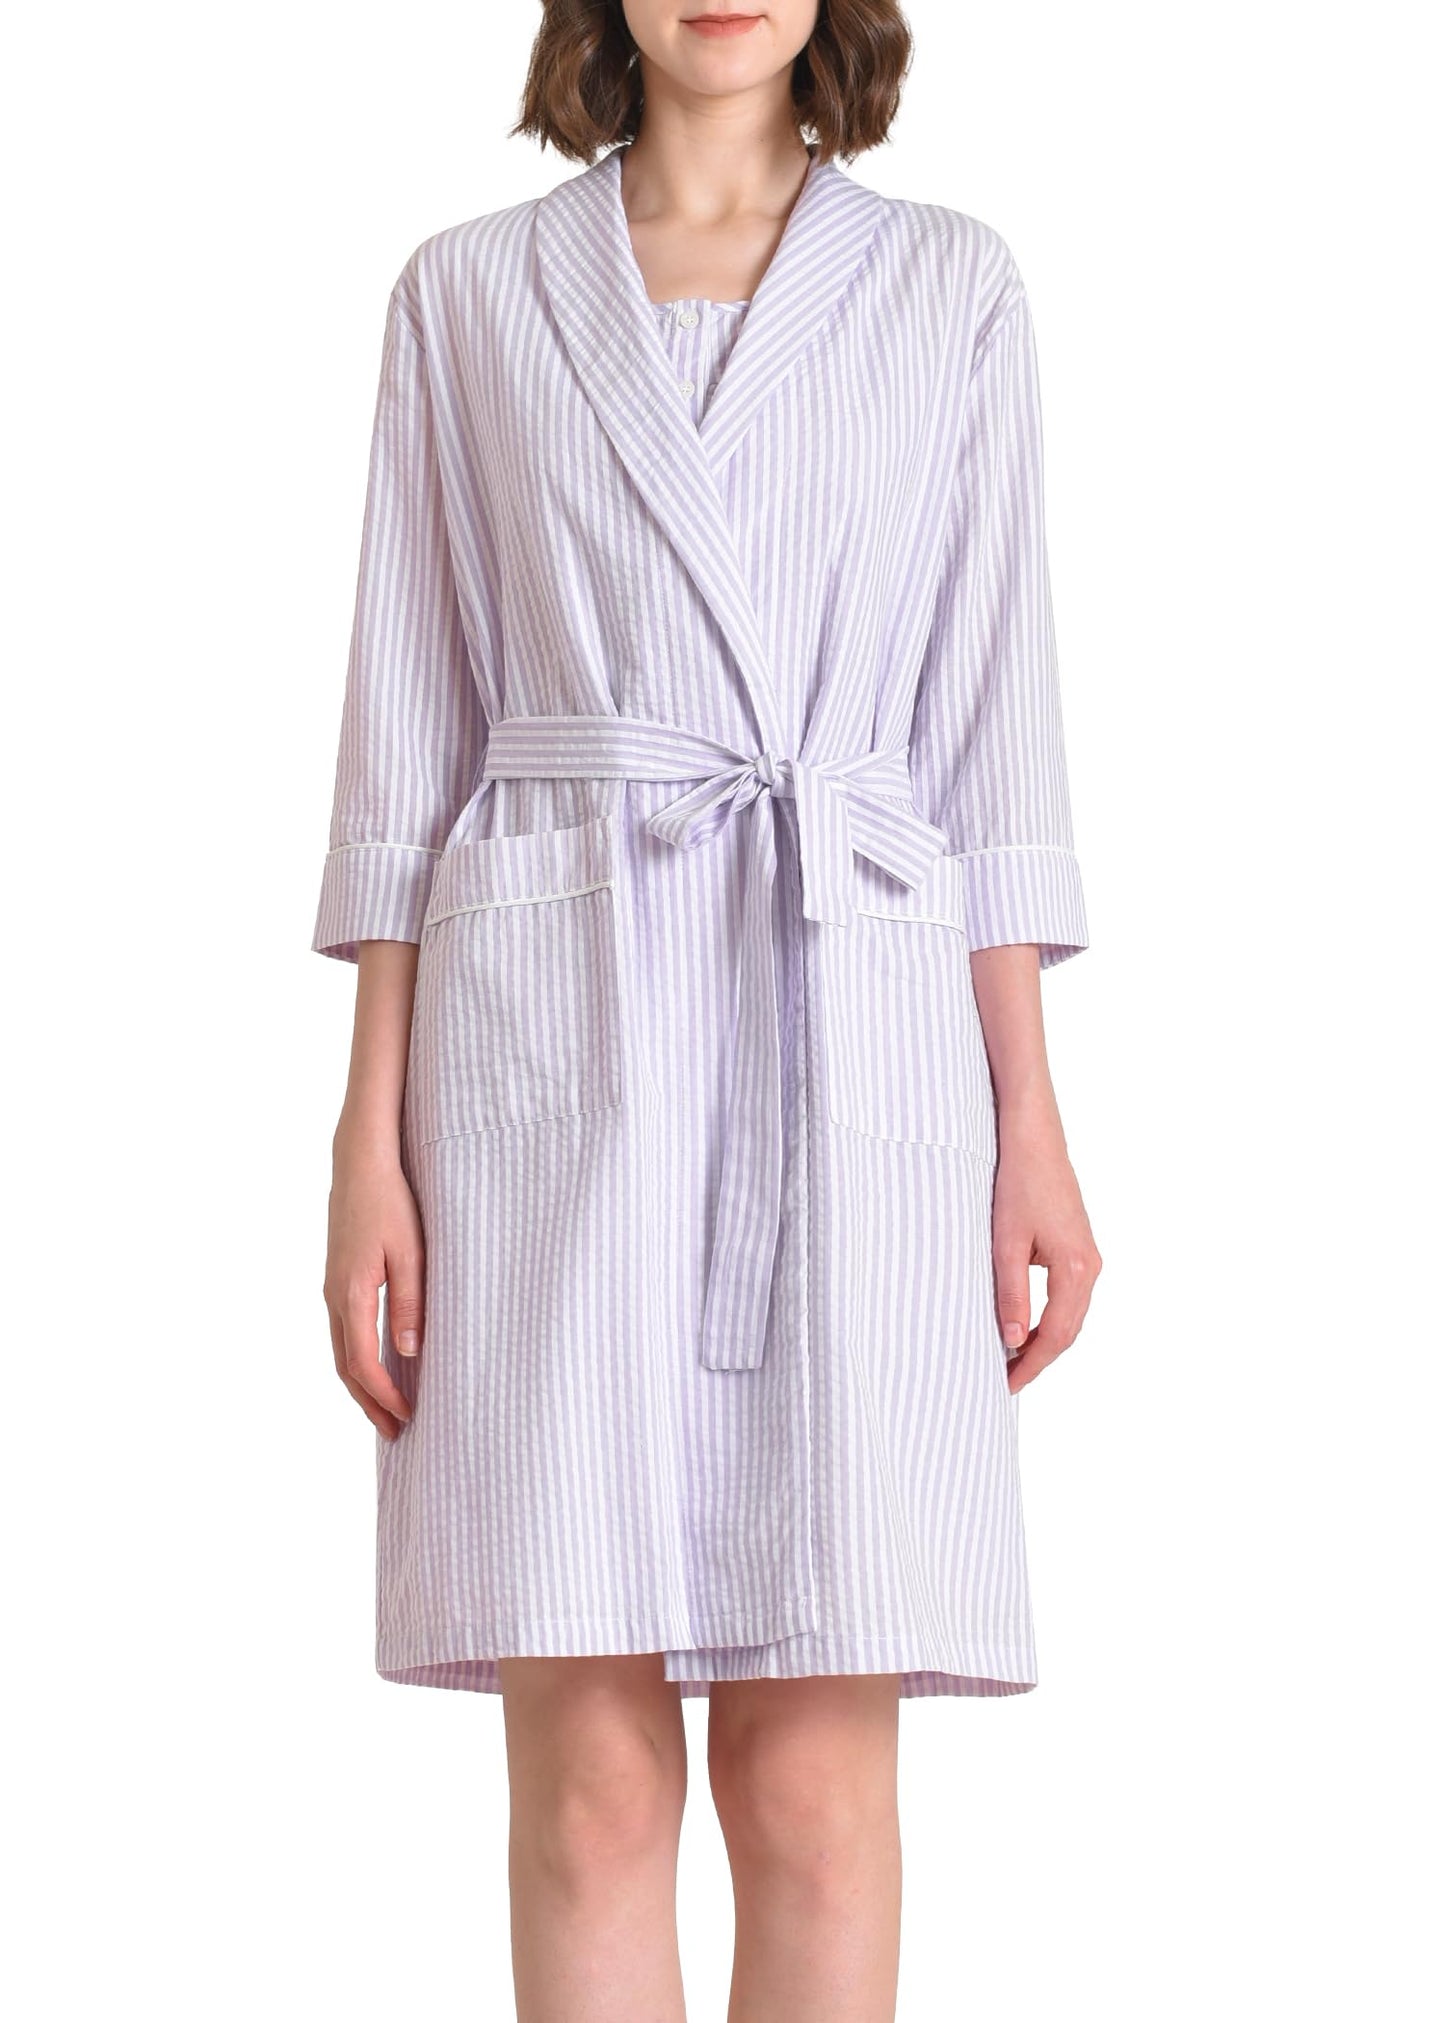 Women's Cotton Nightgown with Matching Robe Set - Latuza